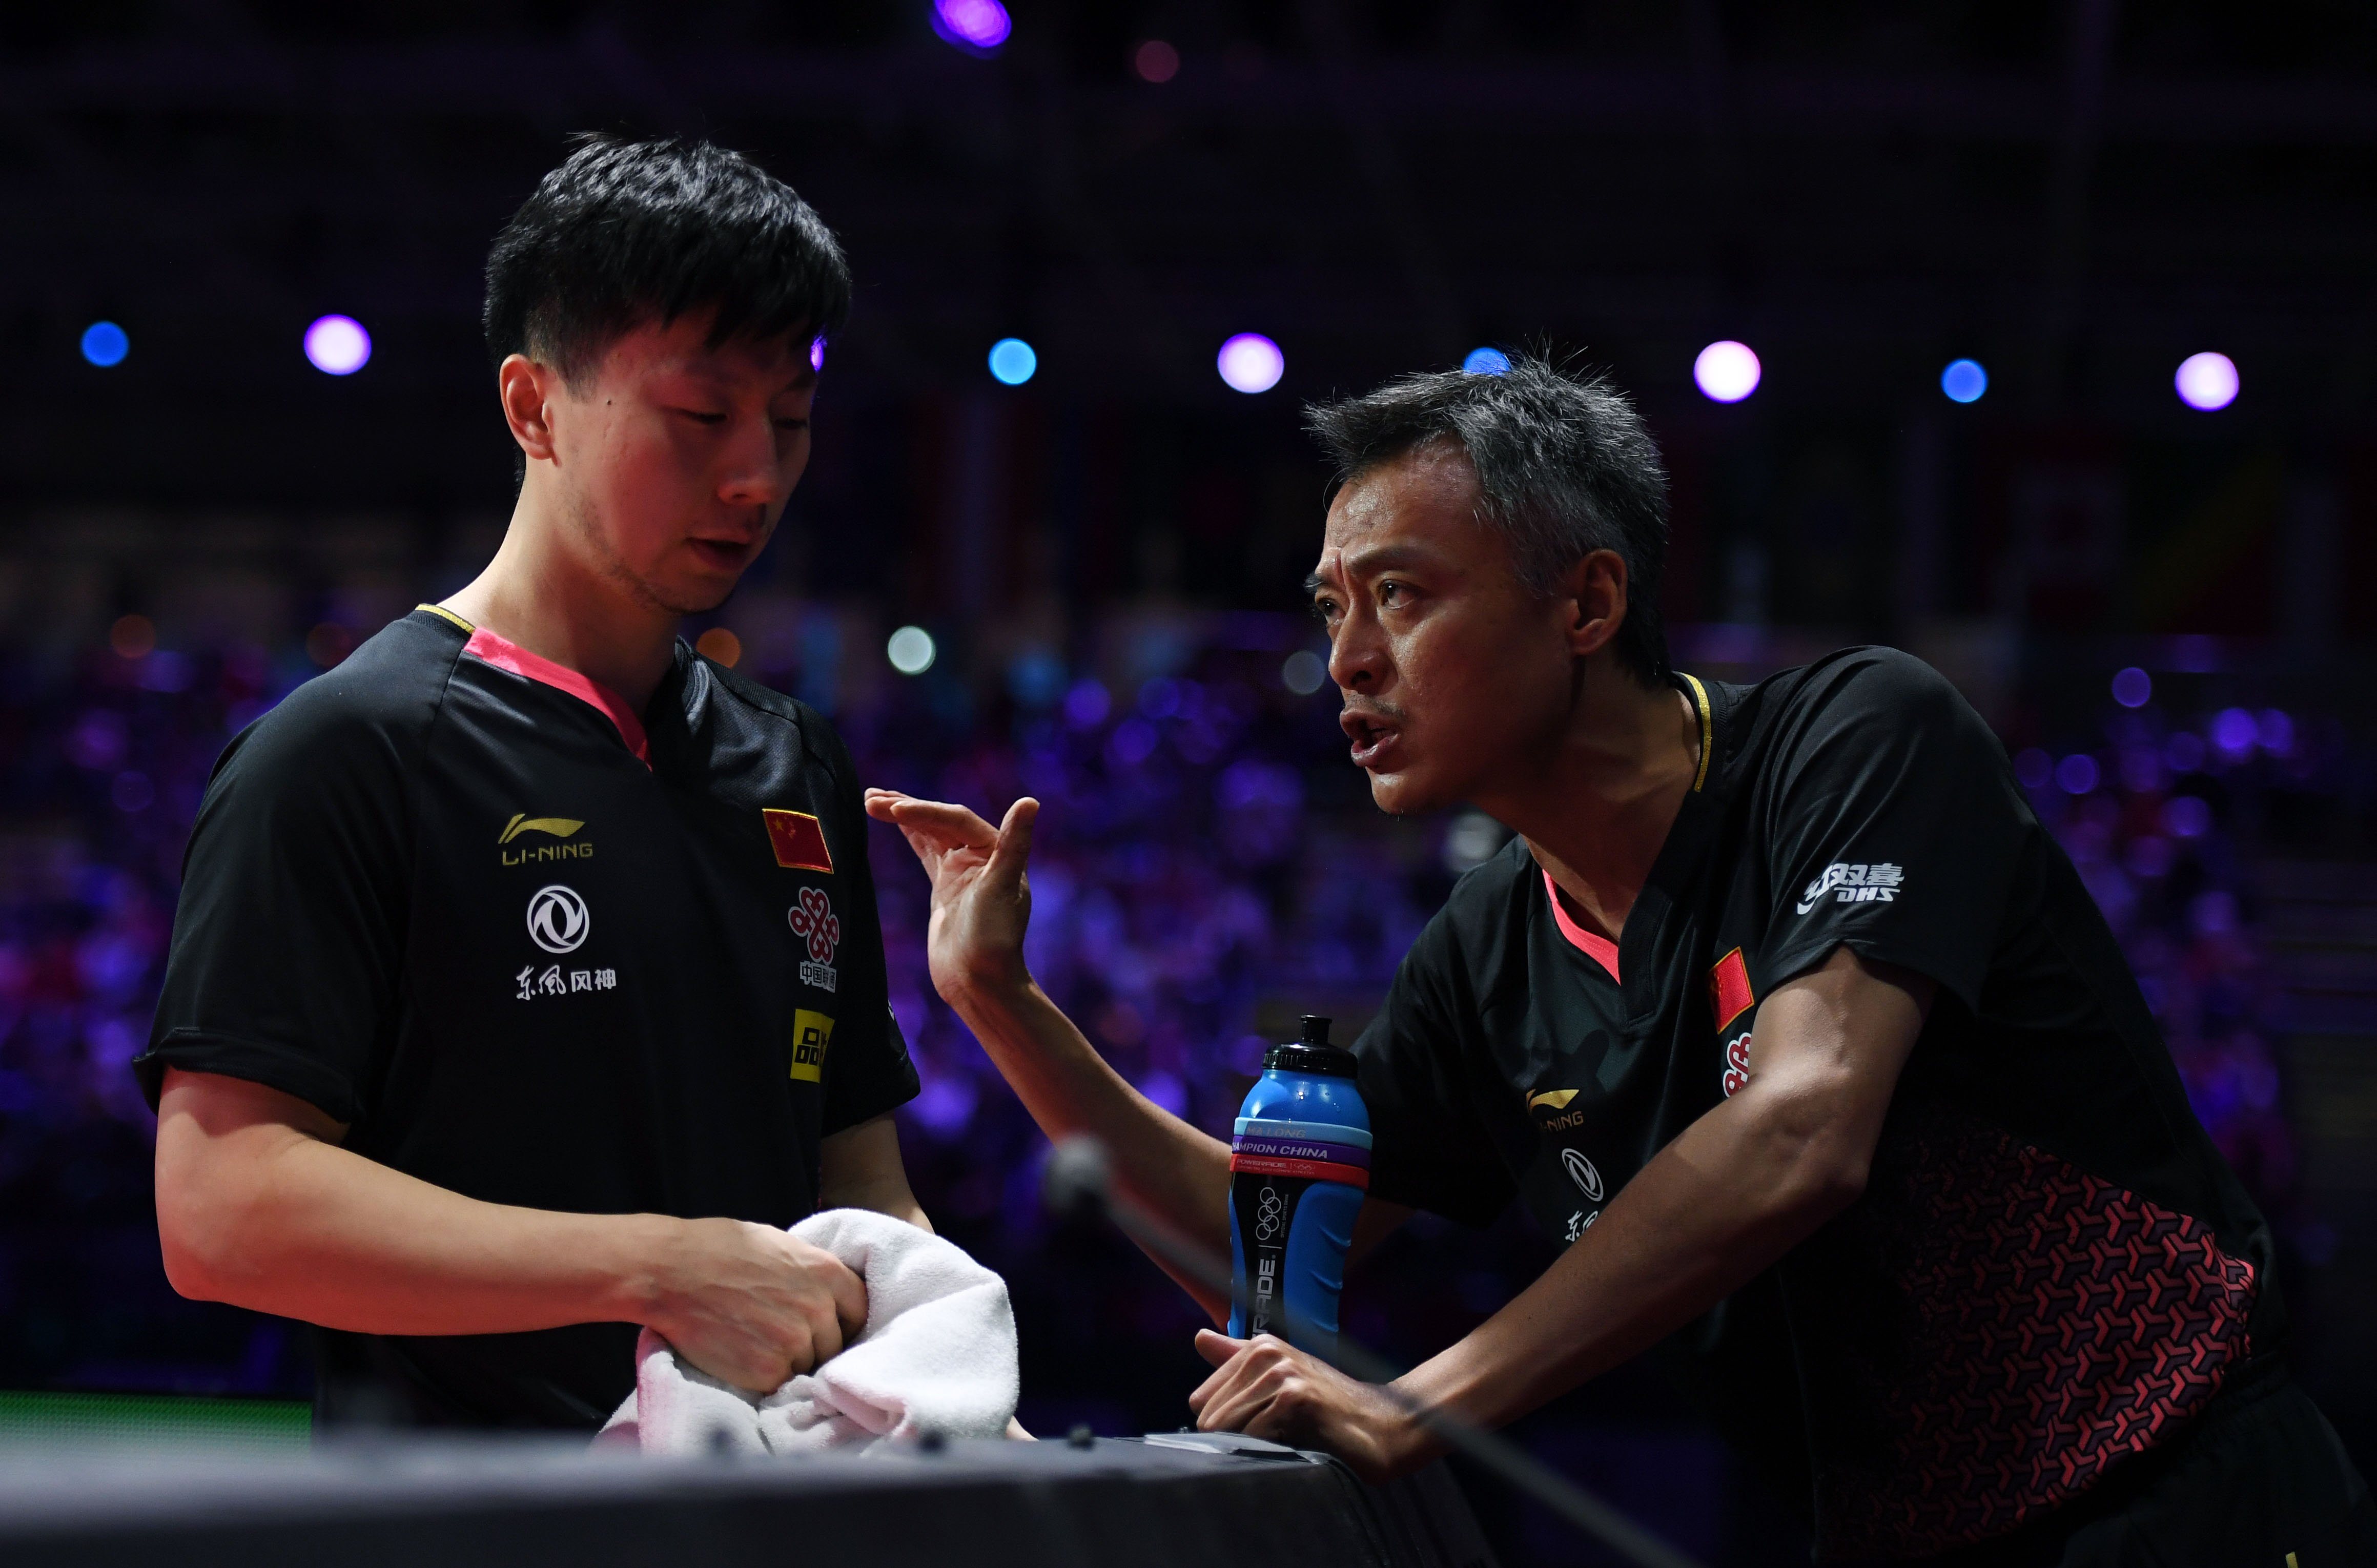 这是2019年4月28日,马龙(左)在决赛中接受教练秦志戬指导.